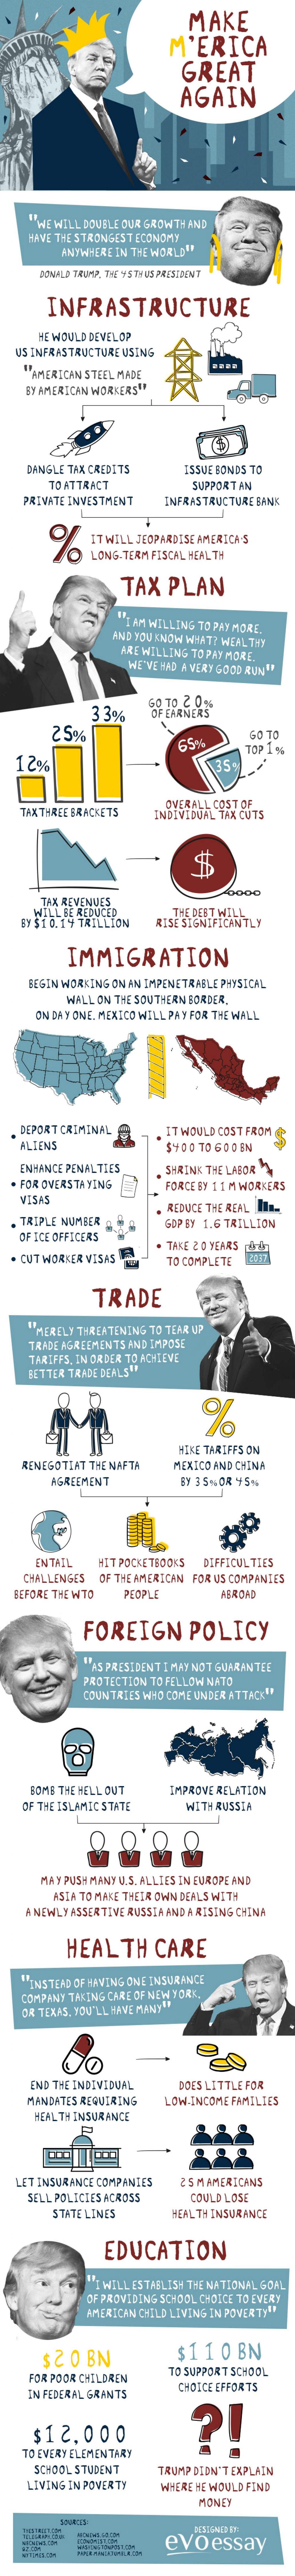 Infographic over hoe Trump Amerika weer groot gaat maken